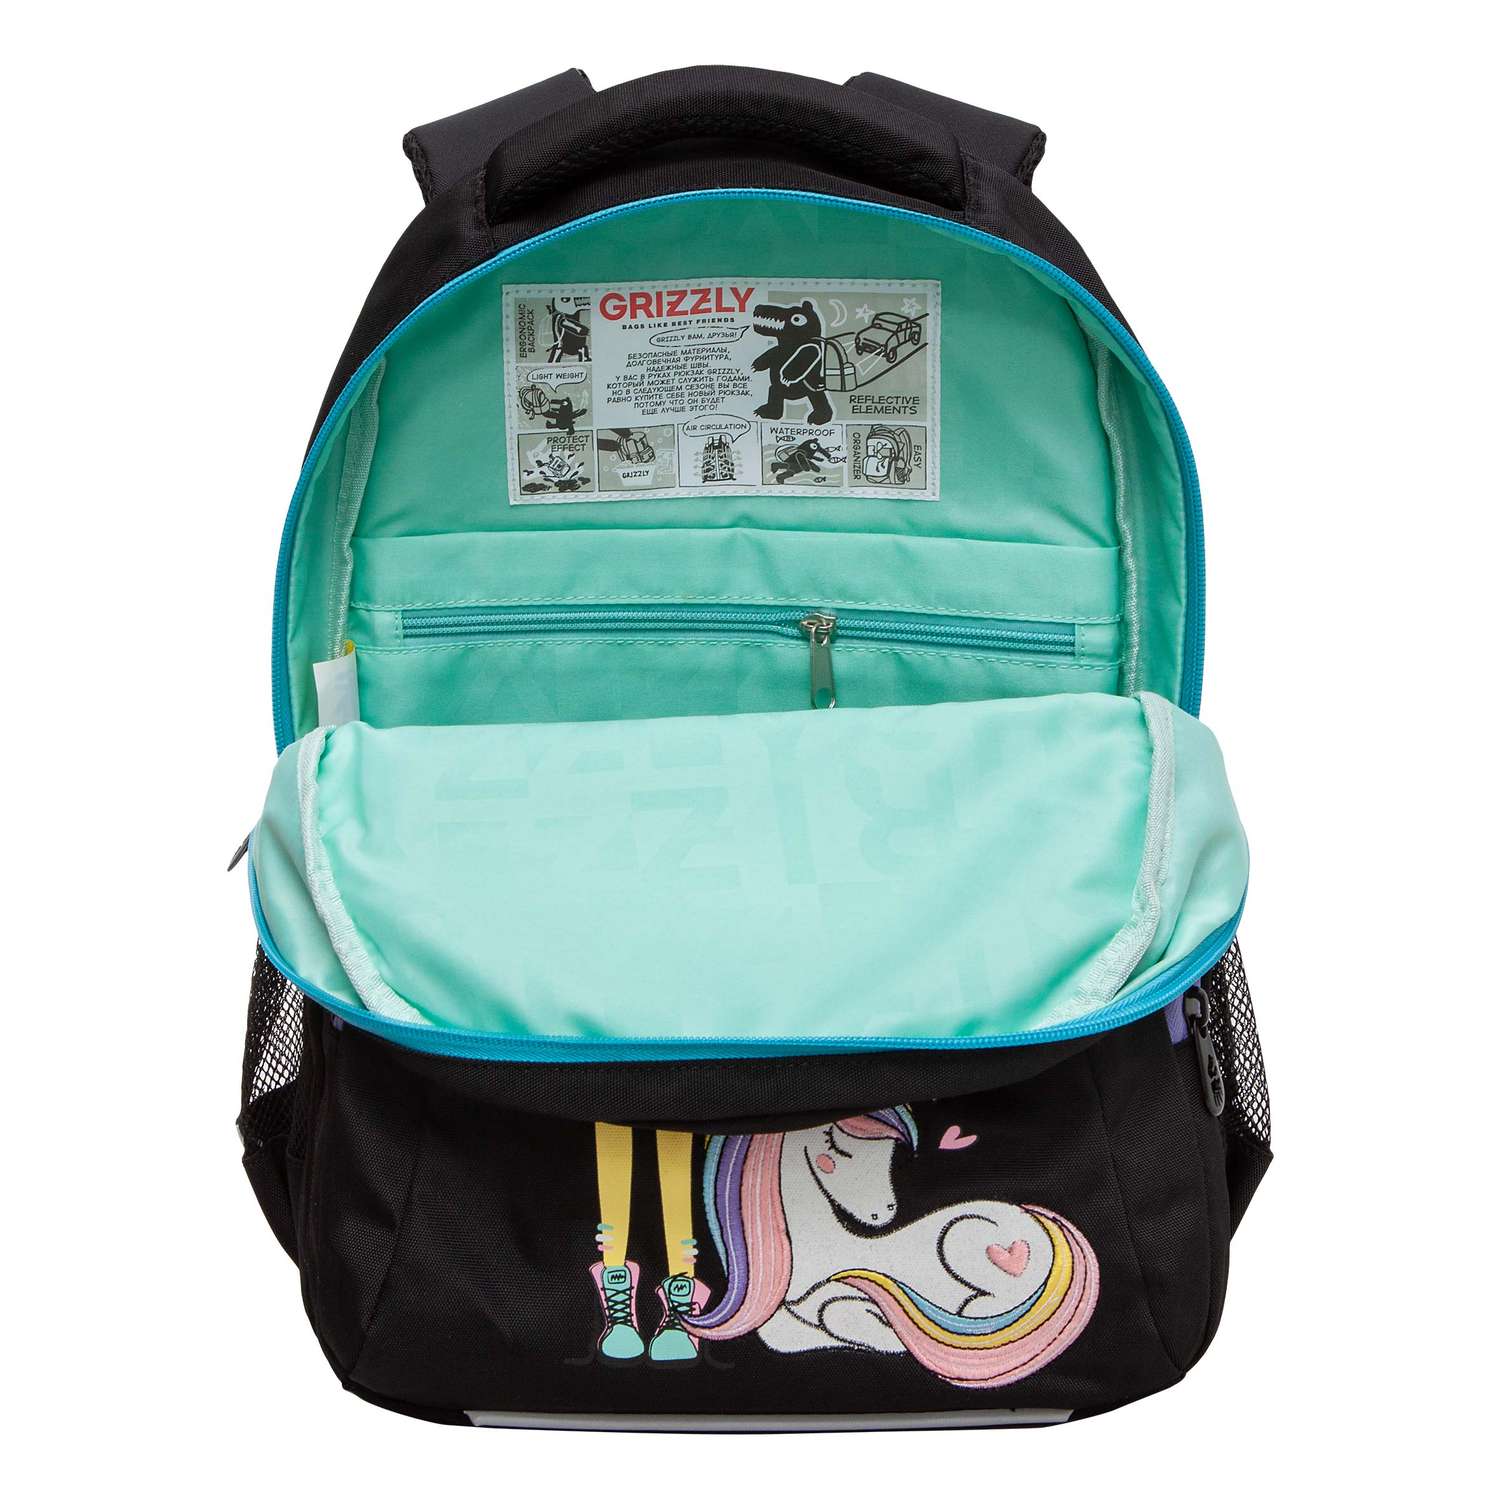 Рюкзак школьный Grizzly Черный RG-461-2/1 - фото 4